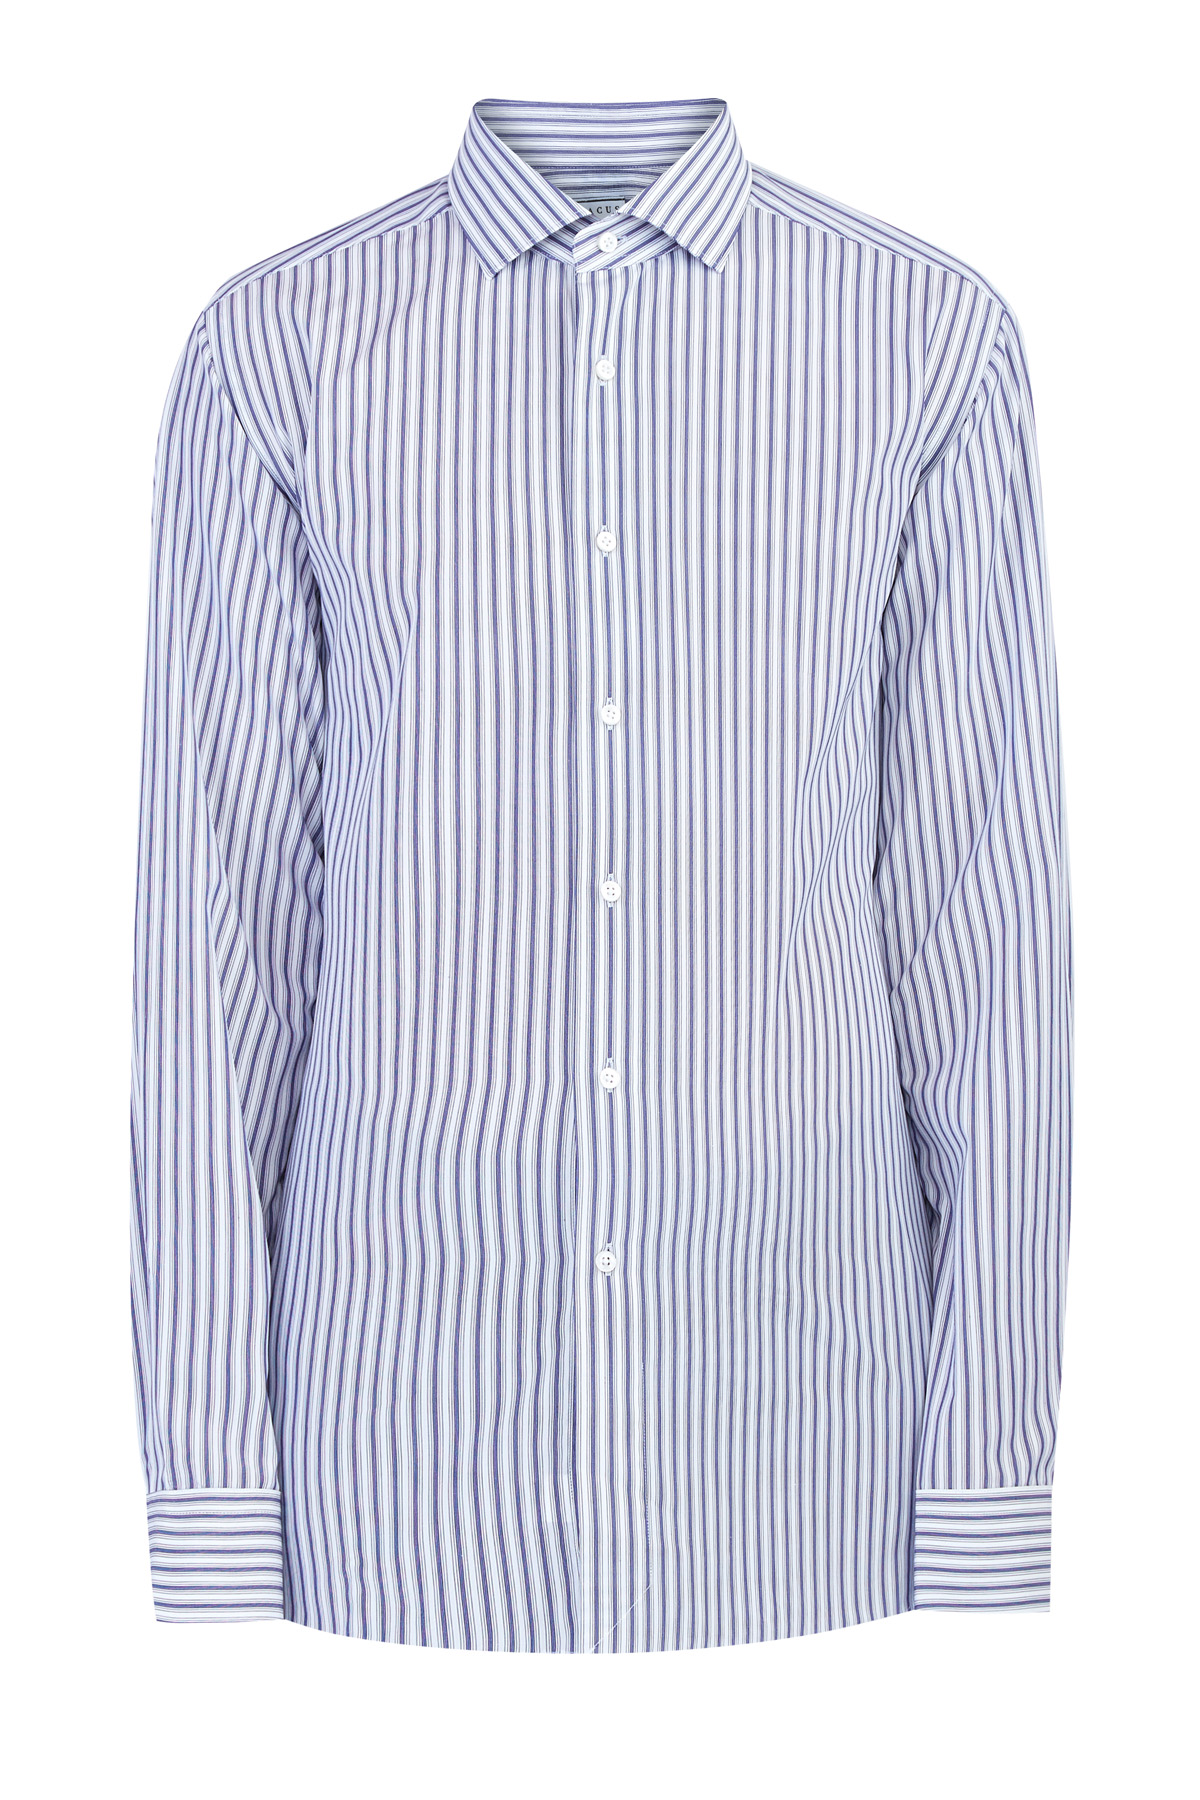 Рубашка в полоску из фирменного экстрамягкого хлопка Supercotone XACUS, цвет синий, размер 50;54;56;52;52 - фото 1